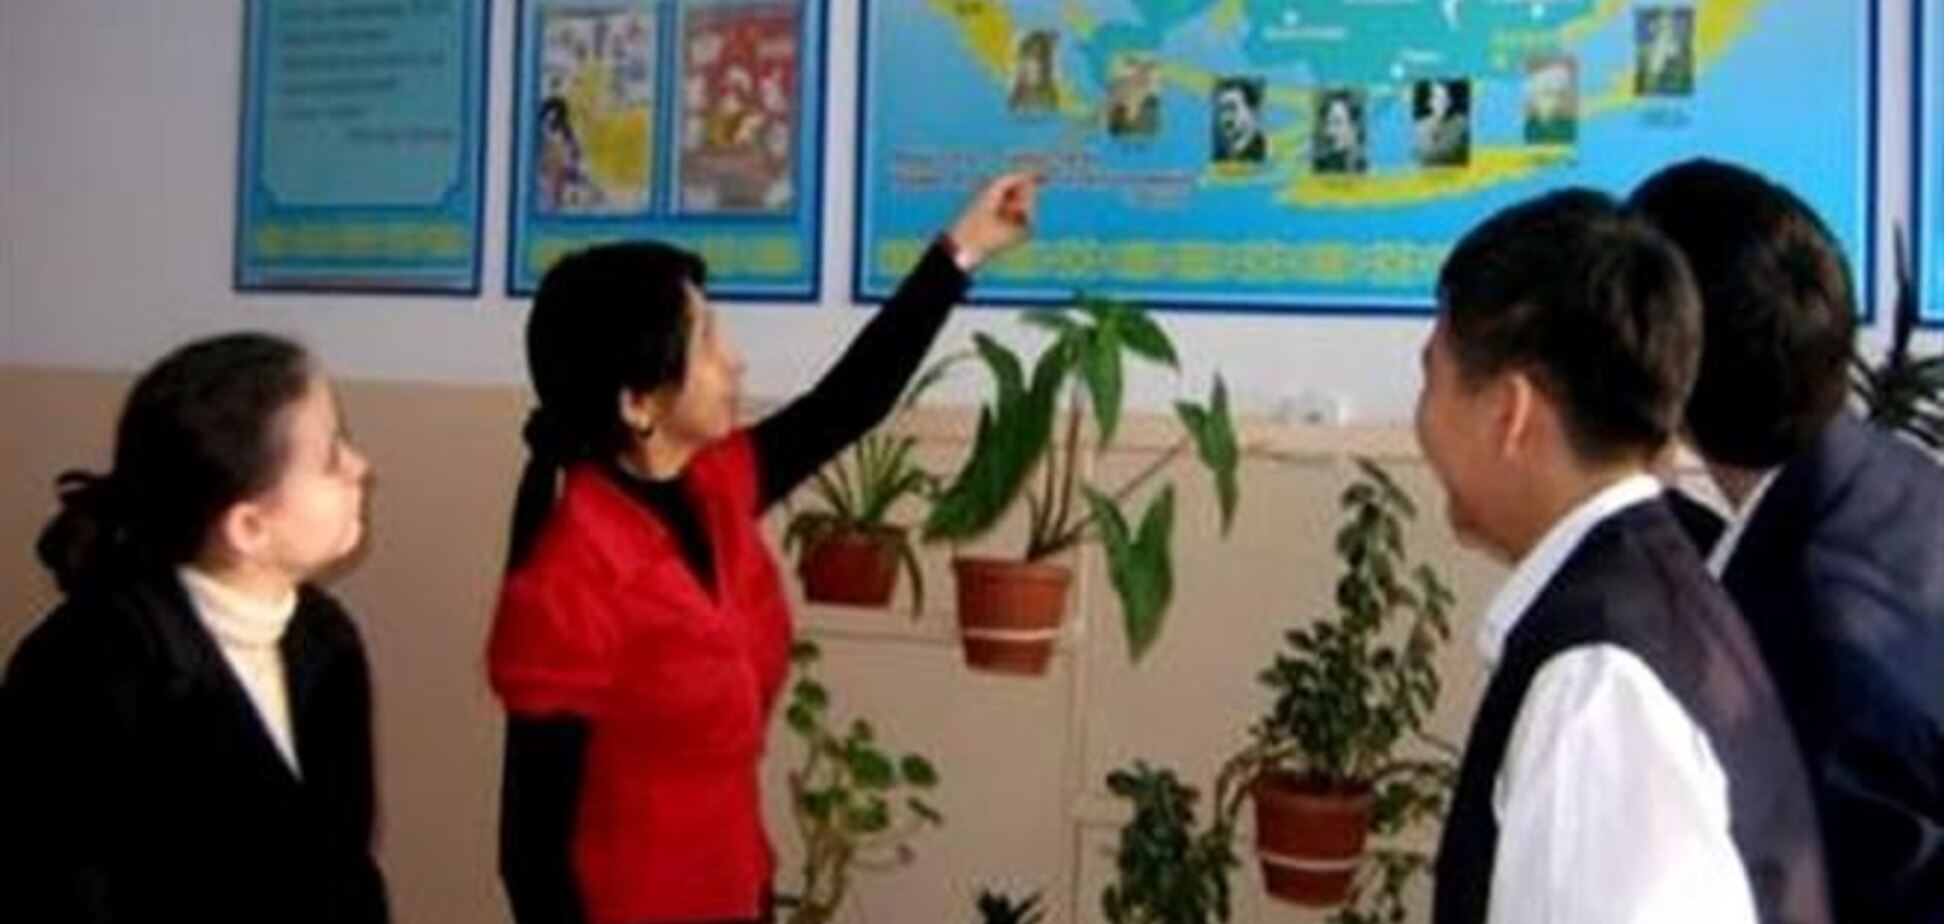 В Казахстане учительнице грозит до 7 лет тюрьмы из-за надписи на лбу ученика